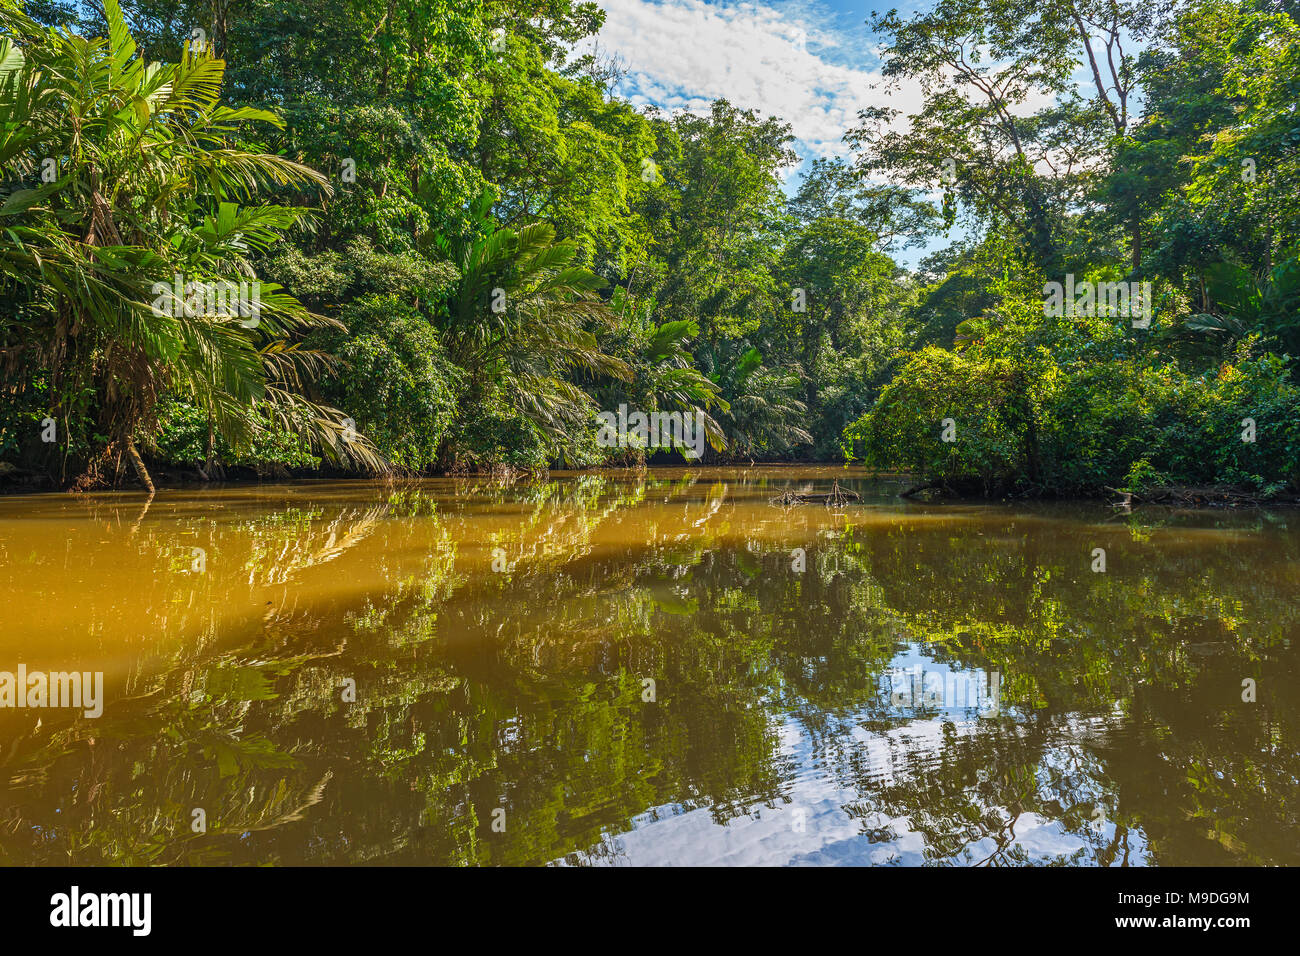 La riflessione della foresta pluviale tropicale all'interno del parco nazionale di Tortuguero dal Mar dei Caraibi e i suoi famosi canali a bordo di una barca turistica viaggio in Costa Rica. Foto Stock